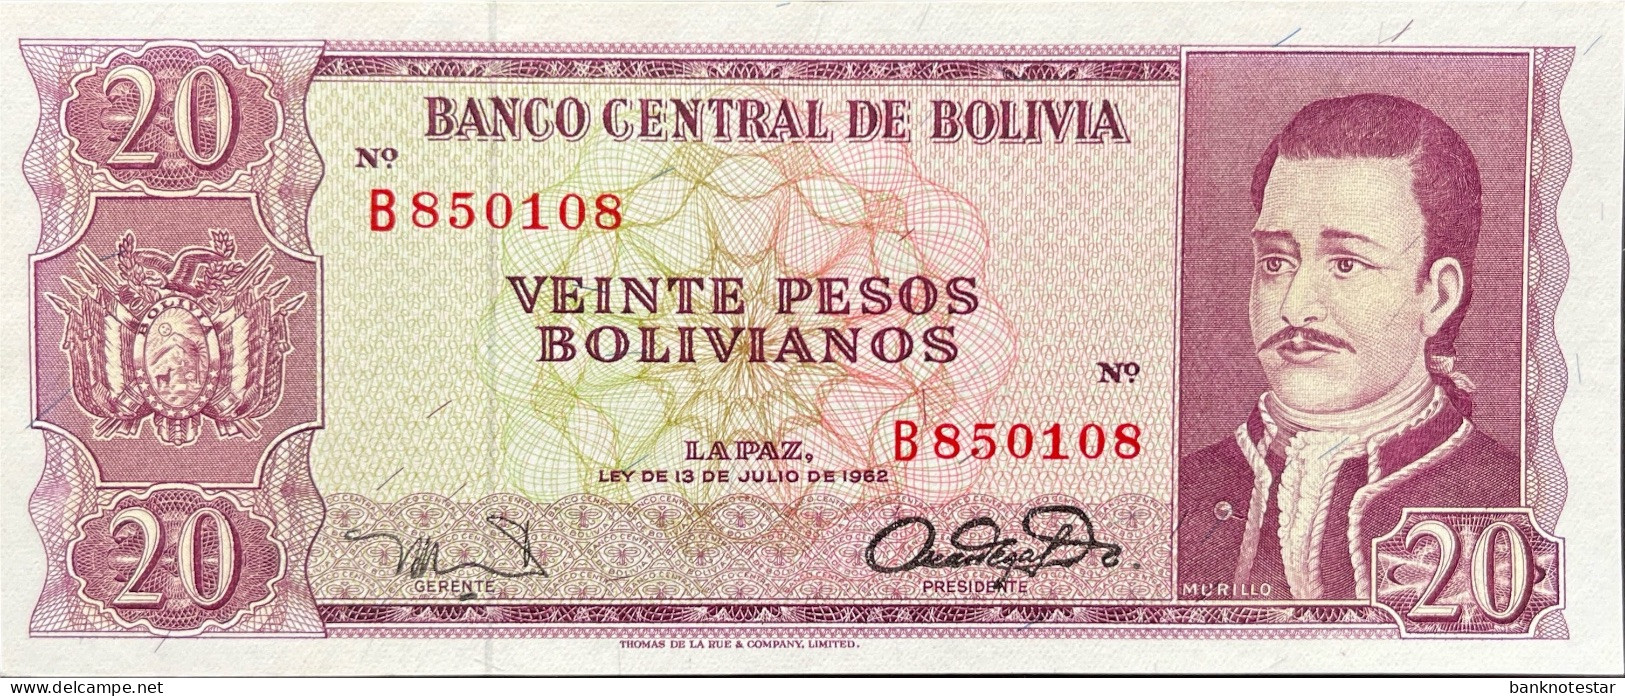 Bolivia 20 Pesos Bolivianos, P-161 (L.1962) - UNC - RARE - Bolivien